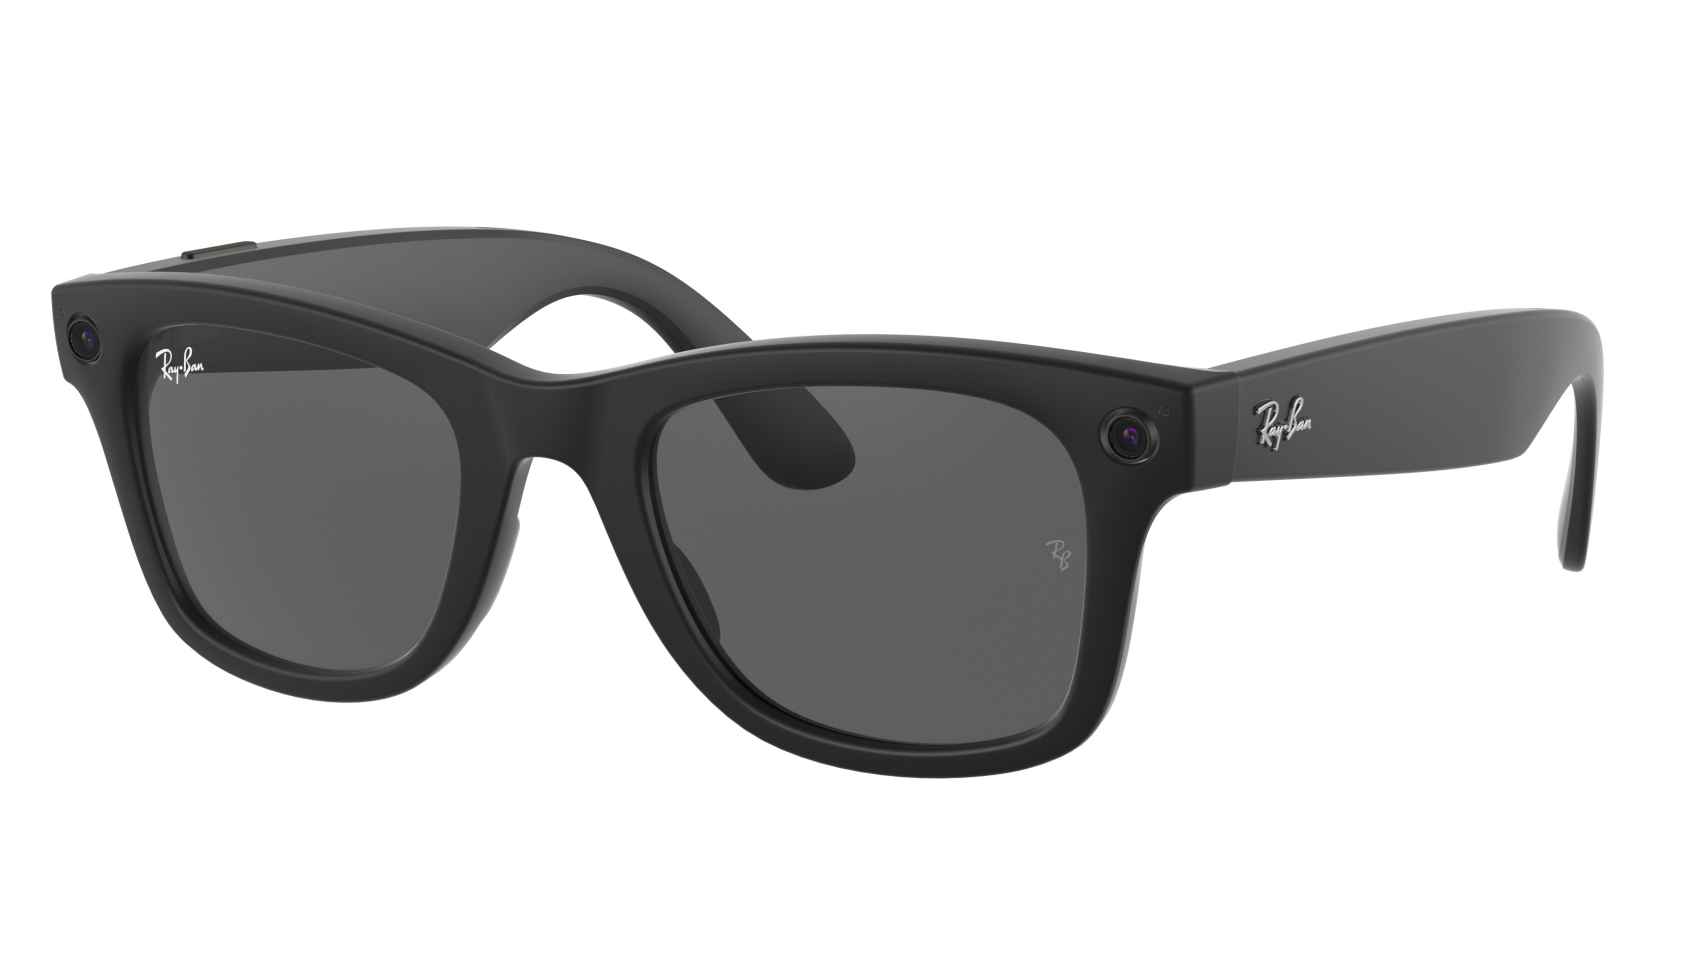 Las gafas inteligentes con cámaras incorporadas de Facebook y Ray-Ban